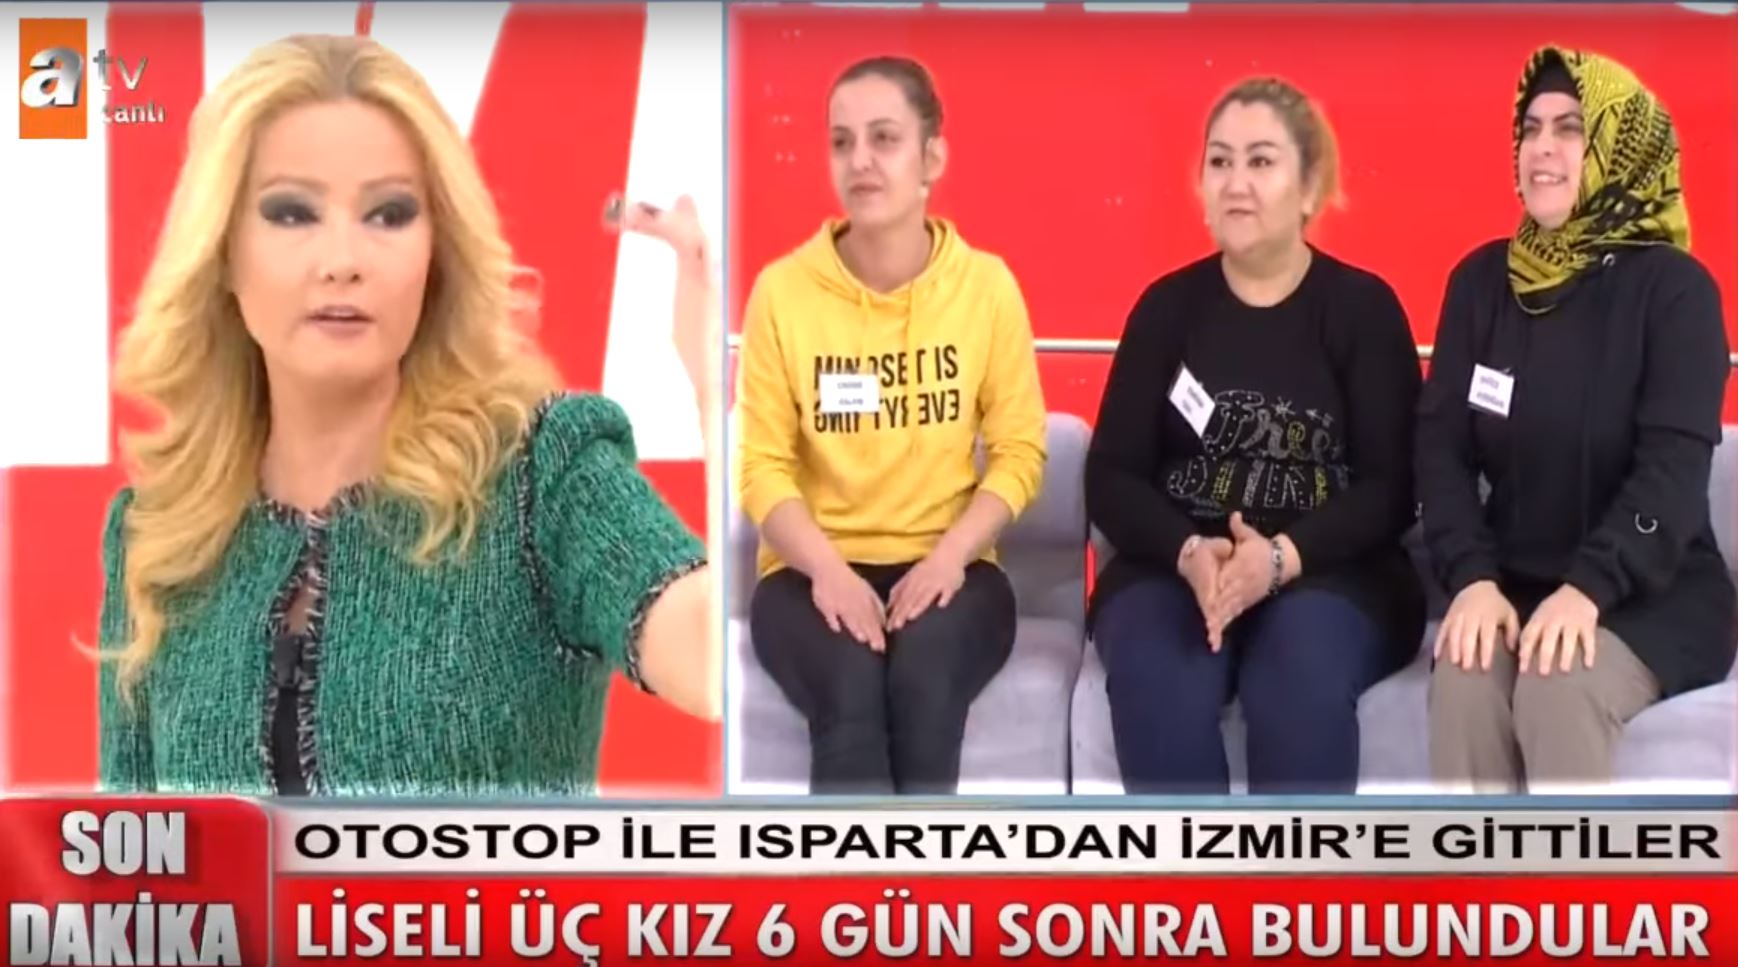 Liseli 3 Kız İzmir'de Bulundu